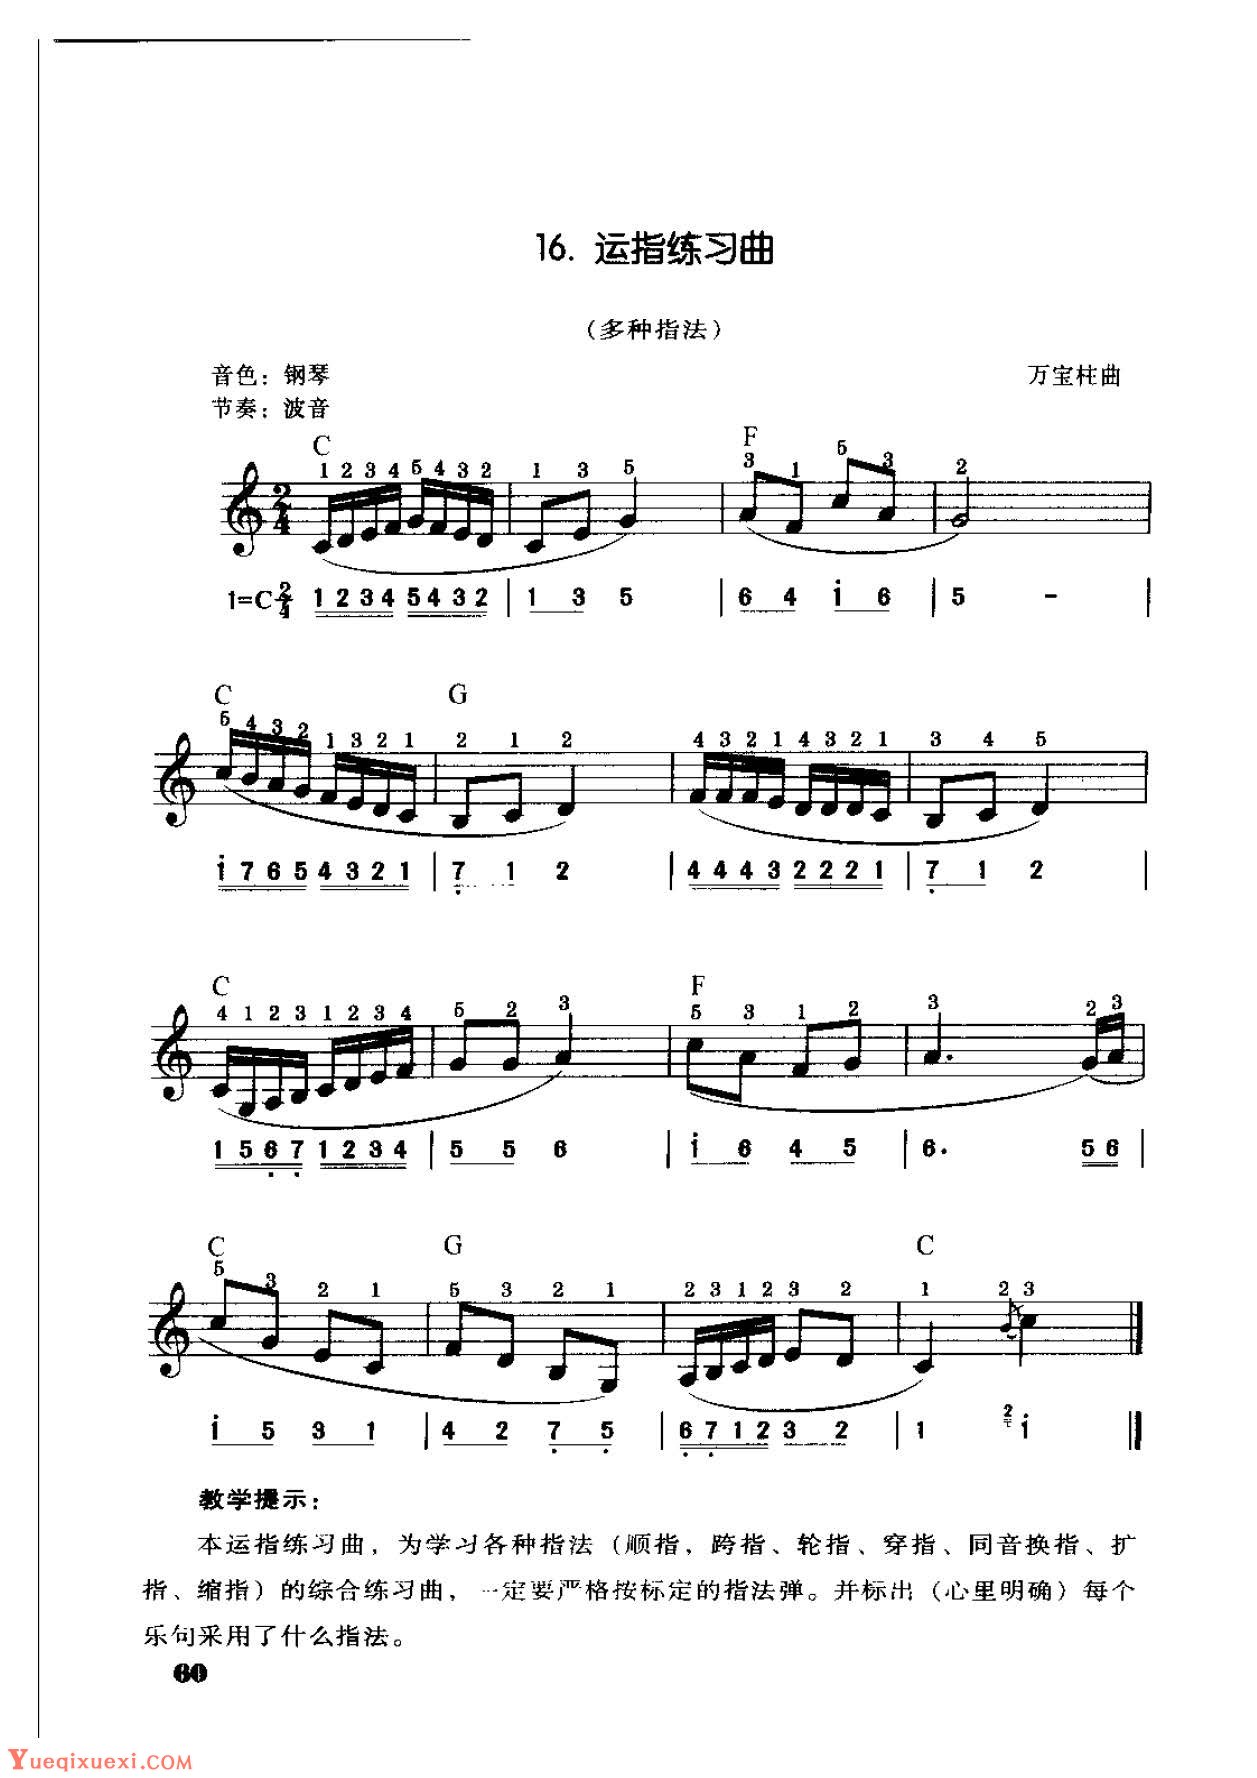 电子琴单指和弦伴奏《运指练习曲》多种指法